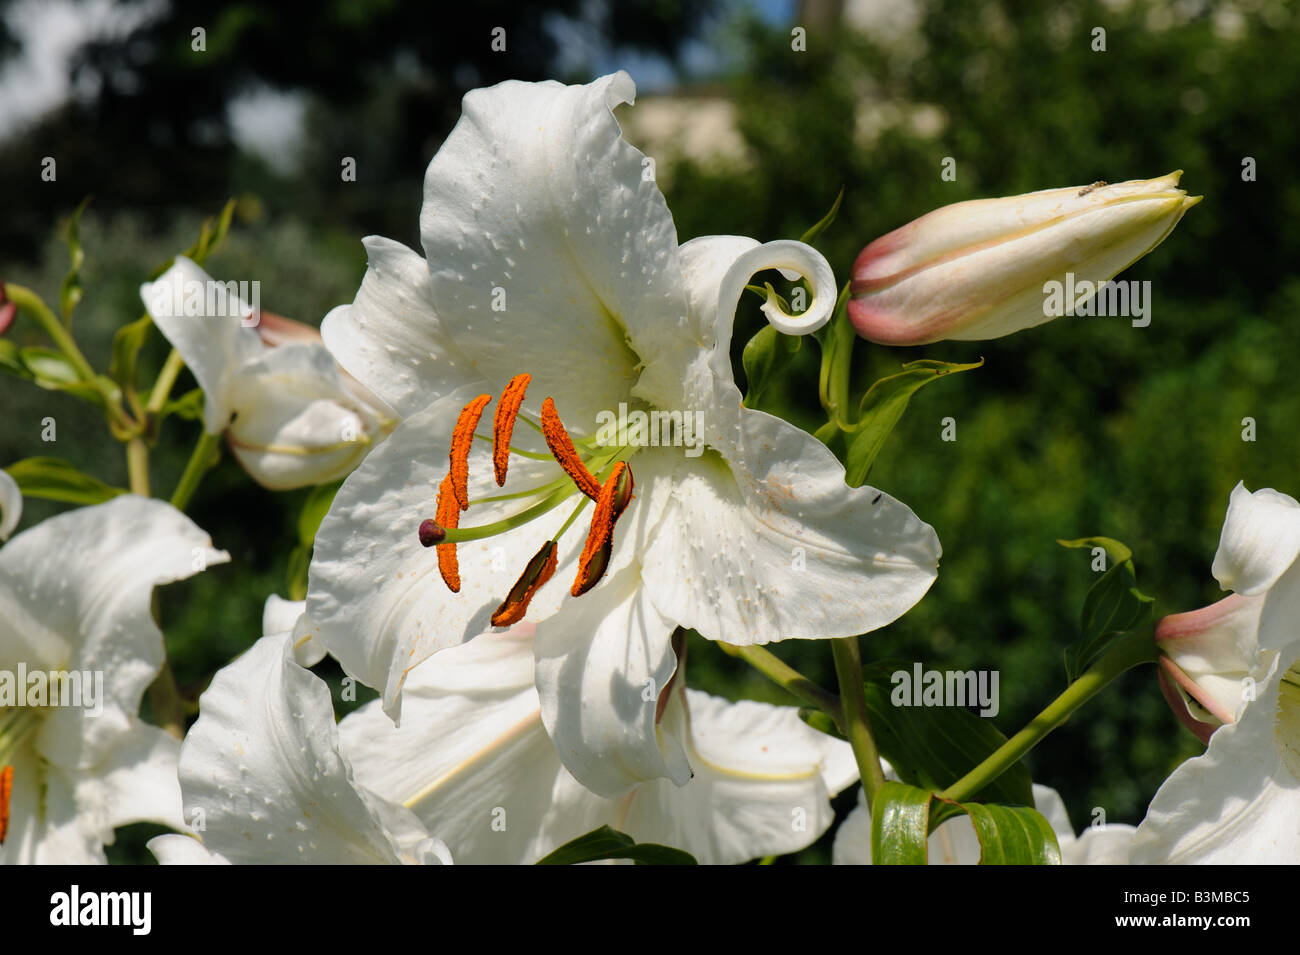 Un bourgeon de fleur et regal lily Lilium regale avec du pollen des anthères orange roulement Banque D'Images